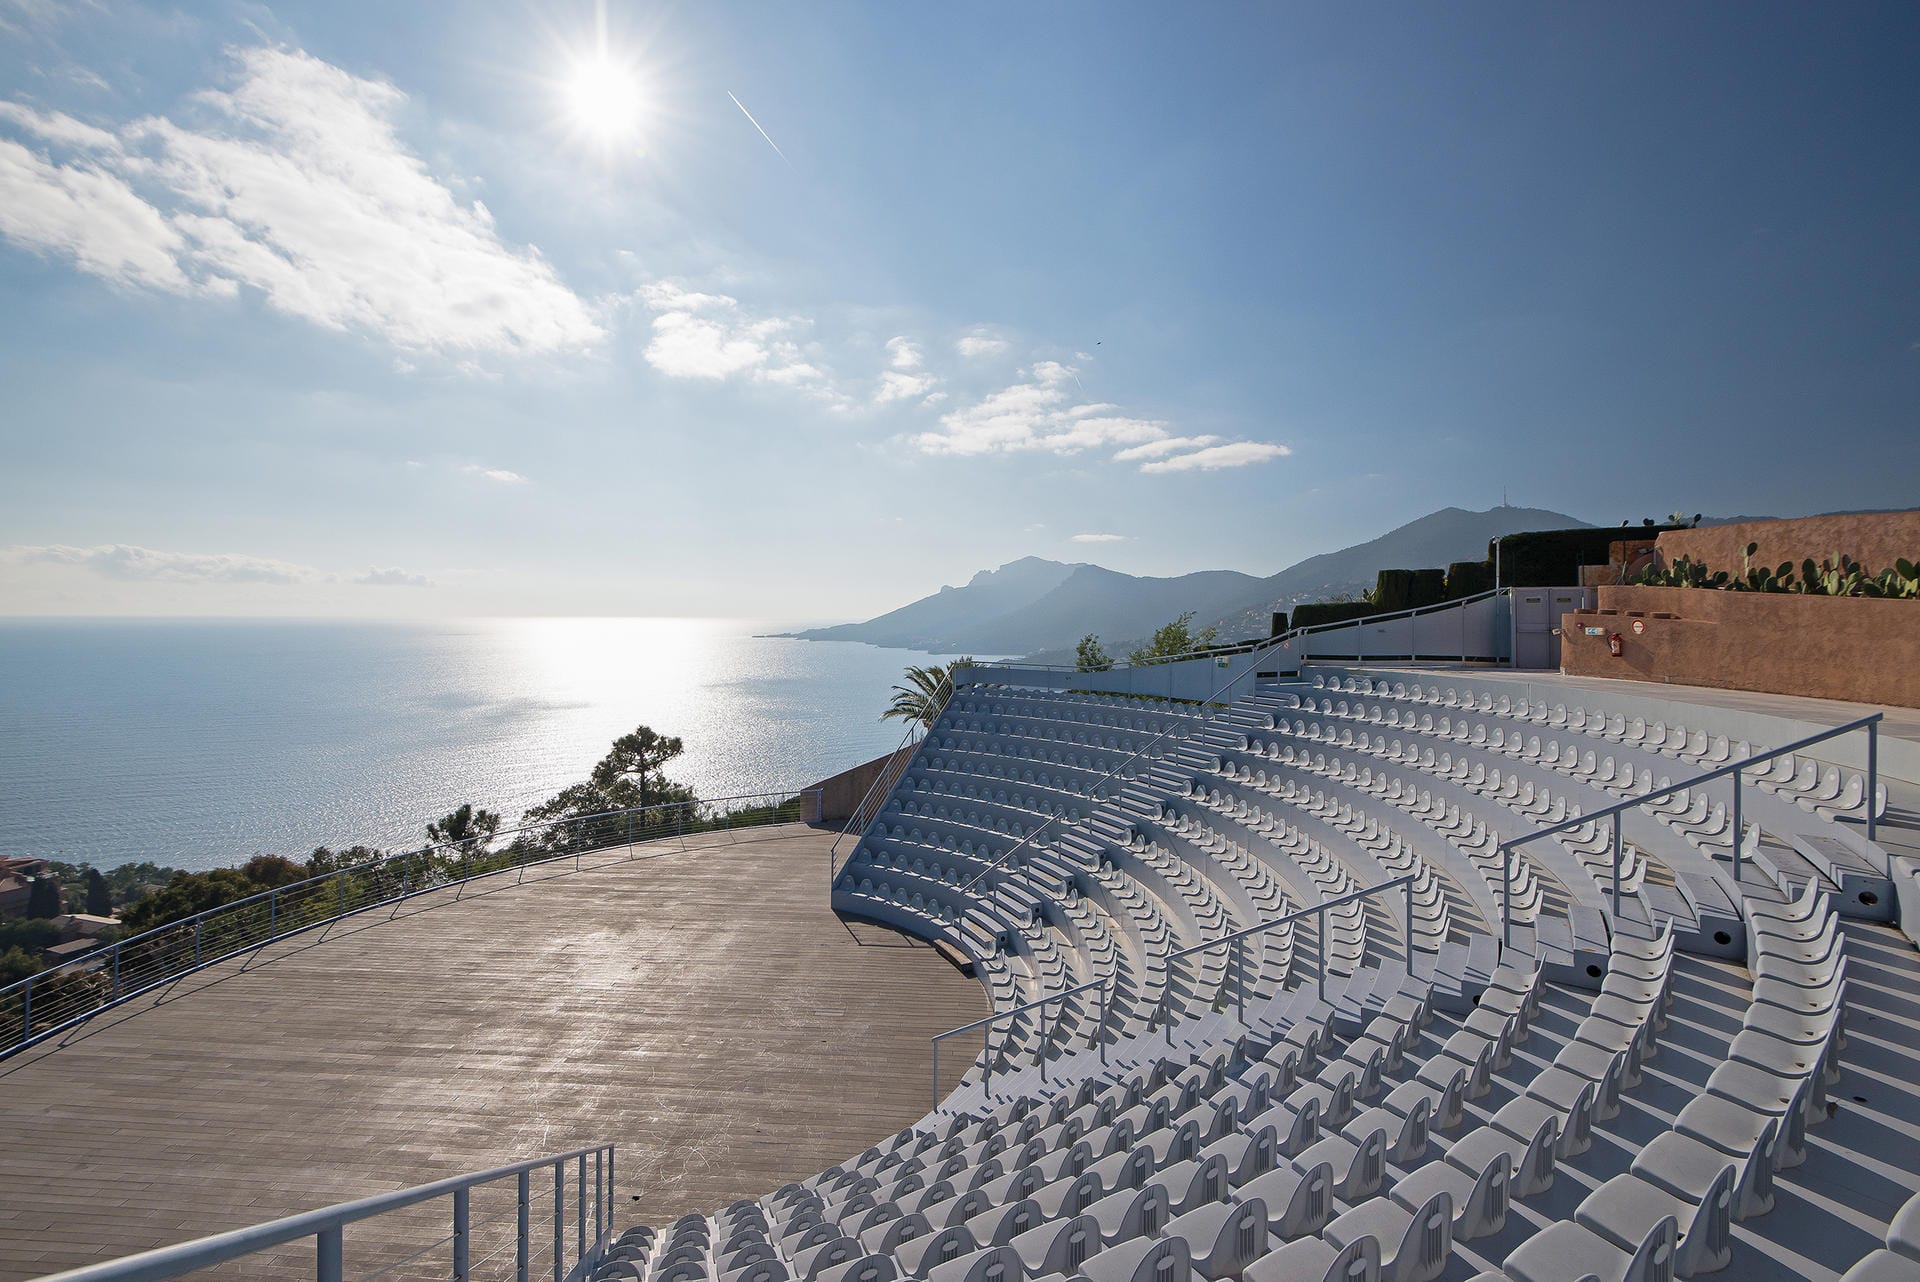 Der Garten umfasst mehr als 8500 Quadratmeter, auf denen Teichanlagen und Swimmingpools um den schönsten Ausblick aufs Mittelmeer wetteifern. Auch das Freiluft-Auditorium, welches 500 Personen Platz bietet, ist mit einer grandiosen Aussicht gesegnet.